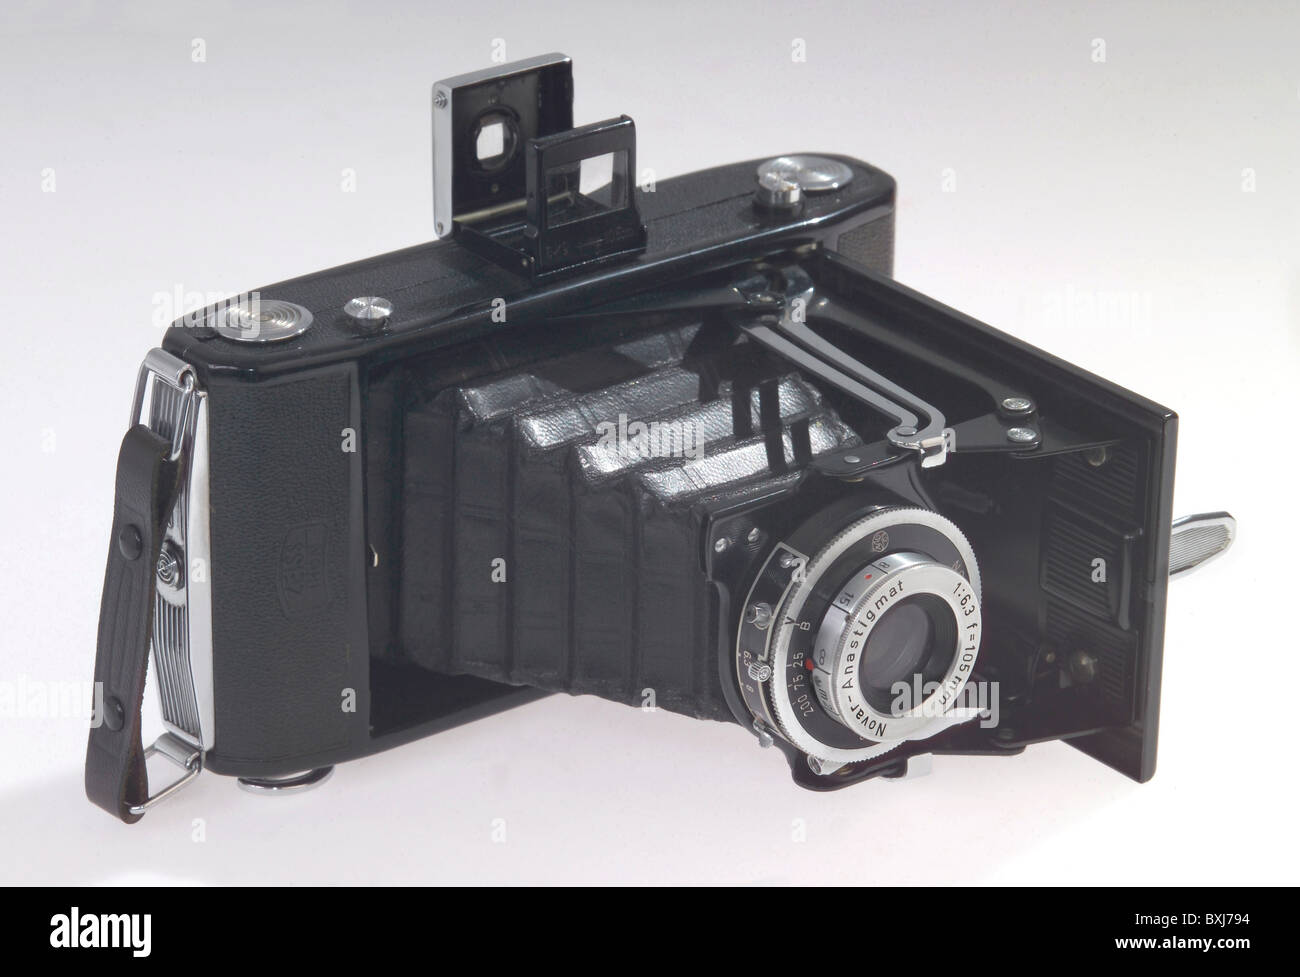 Fotografie, Kameras, Zeiss Ikon, Rollfilm, Objektiv: Novar, Anastigmat, Deutschland, um 1955, zusätzliche-Rights-Clearenzen-nicht verfügbar Stockfoto